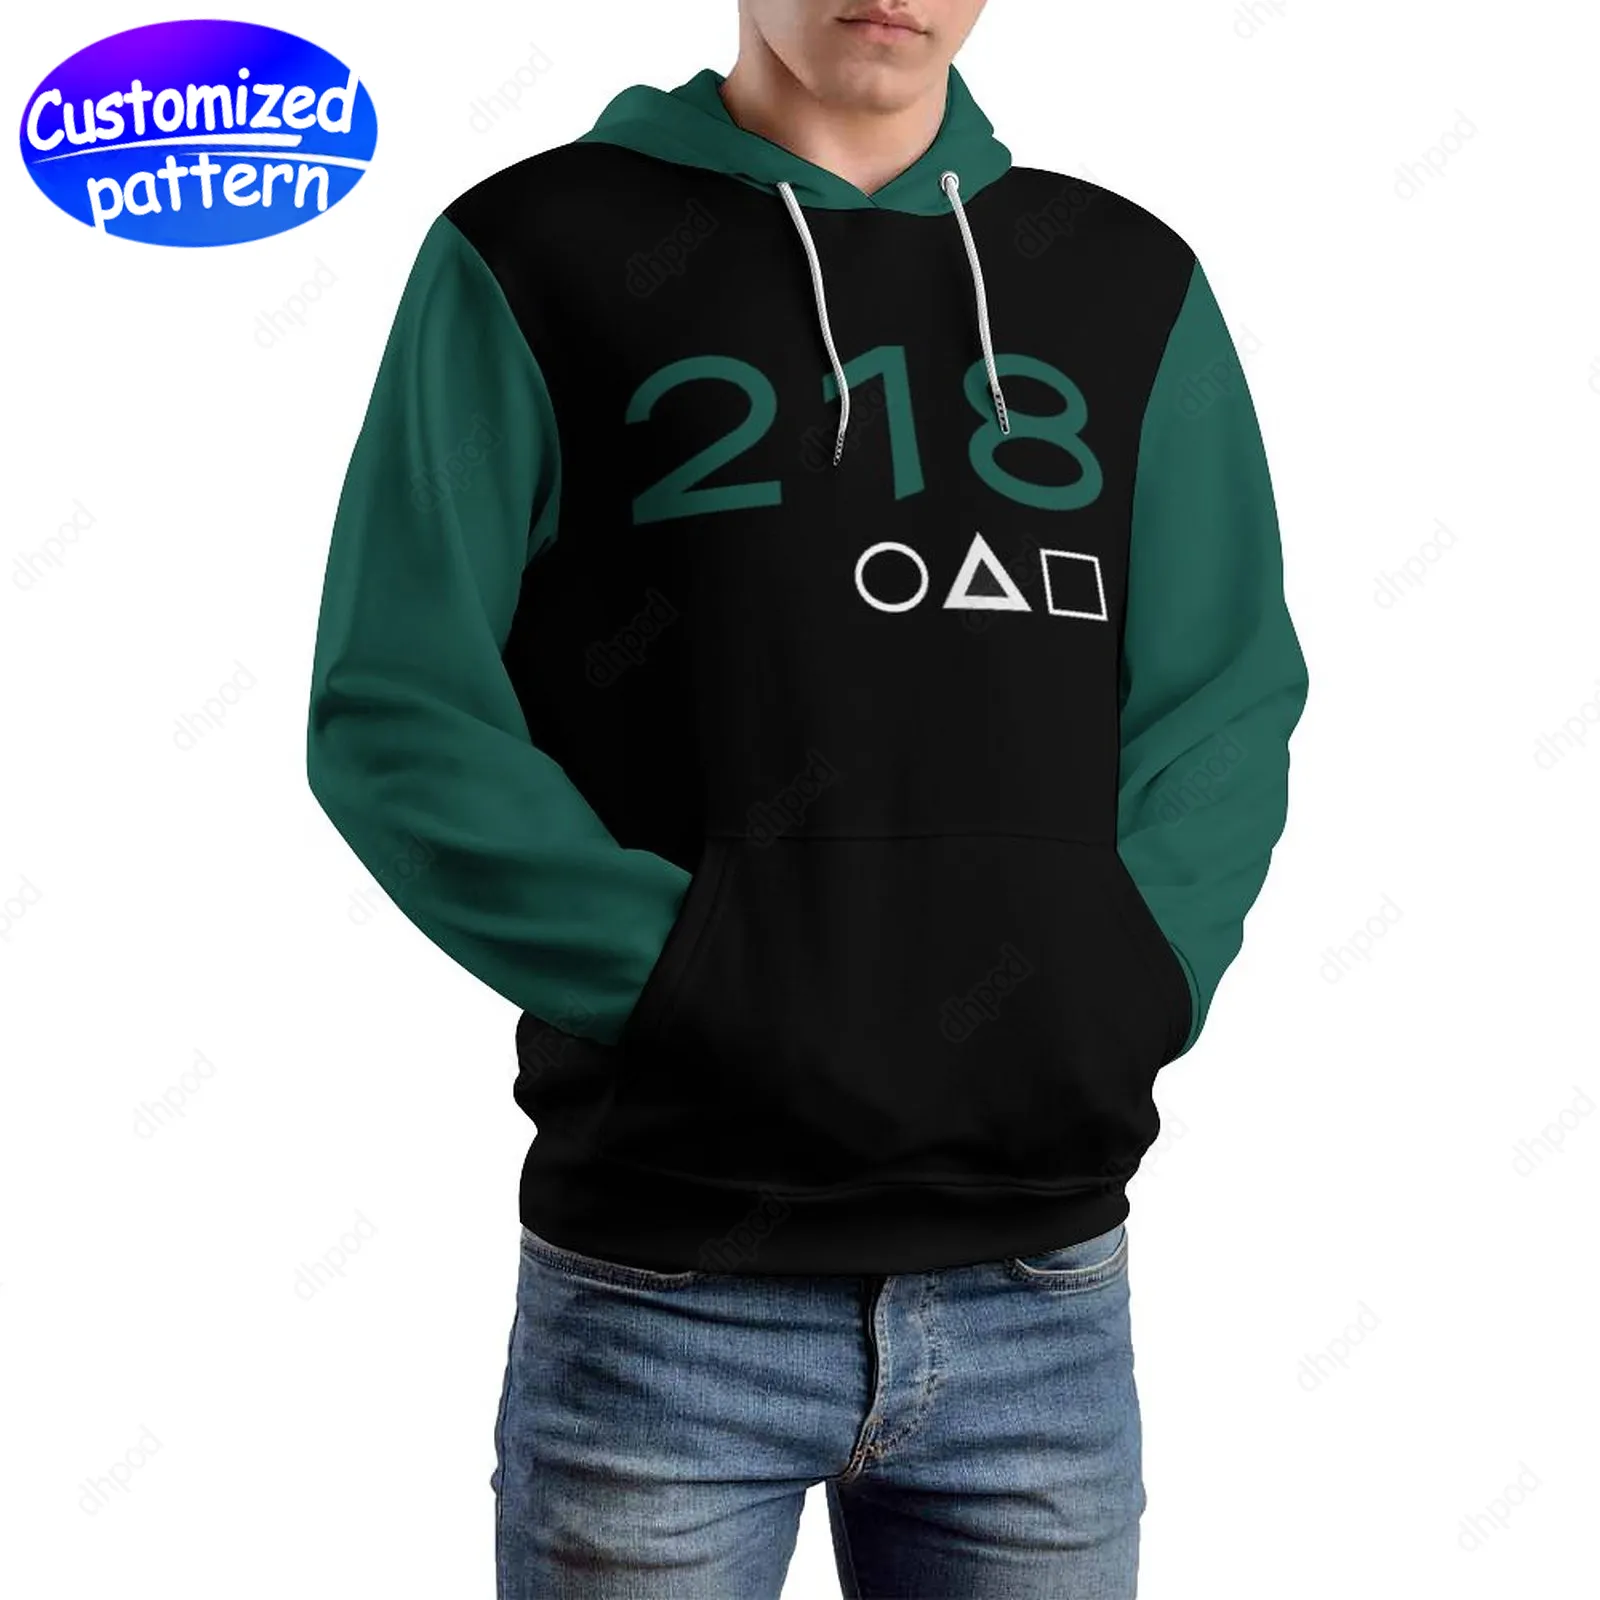 Tasarımcı Erkek Hoodies Sweatshirts Black Green 218 Hip-Hop Rock Özel Desenli Kapaklar Sıradan Athleisure Sports Açık Toptan Hoodie Erkekler Giyim Büyük Boy S-5XL